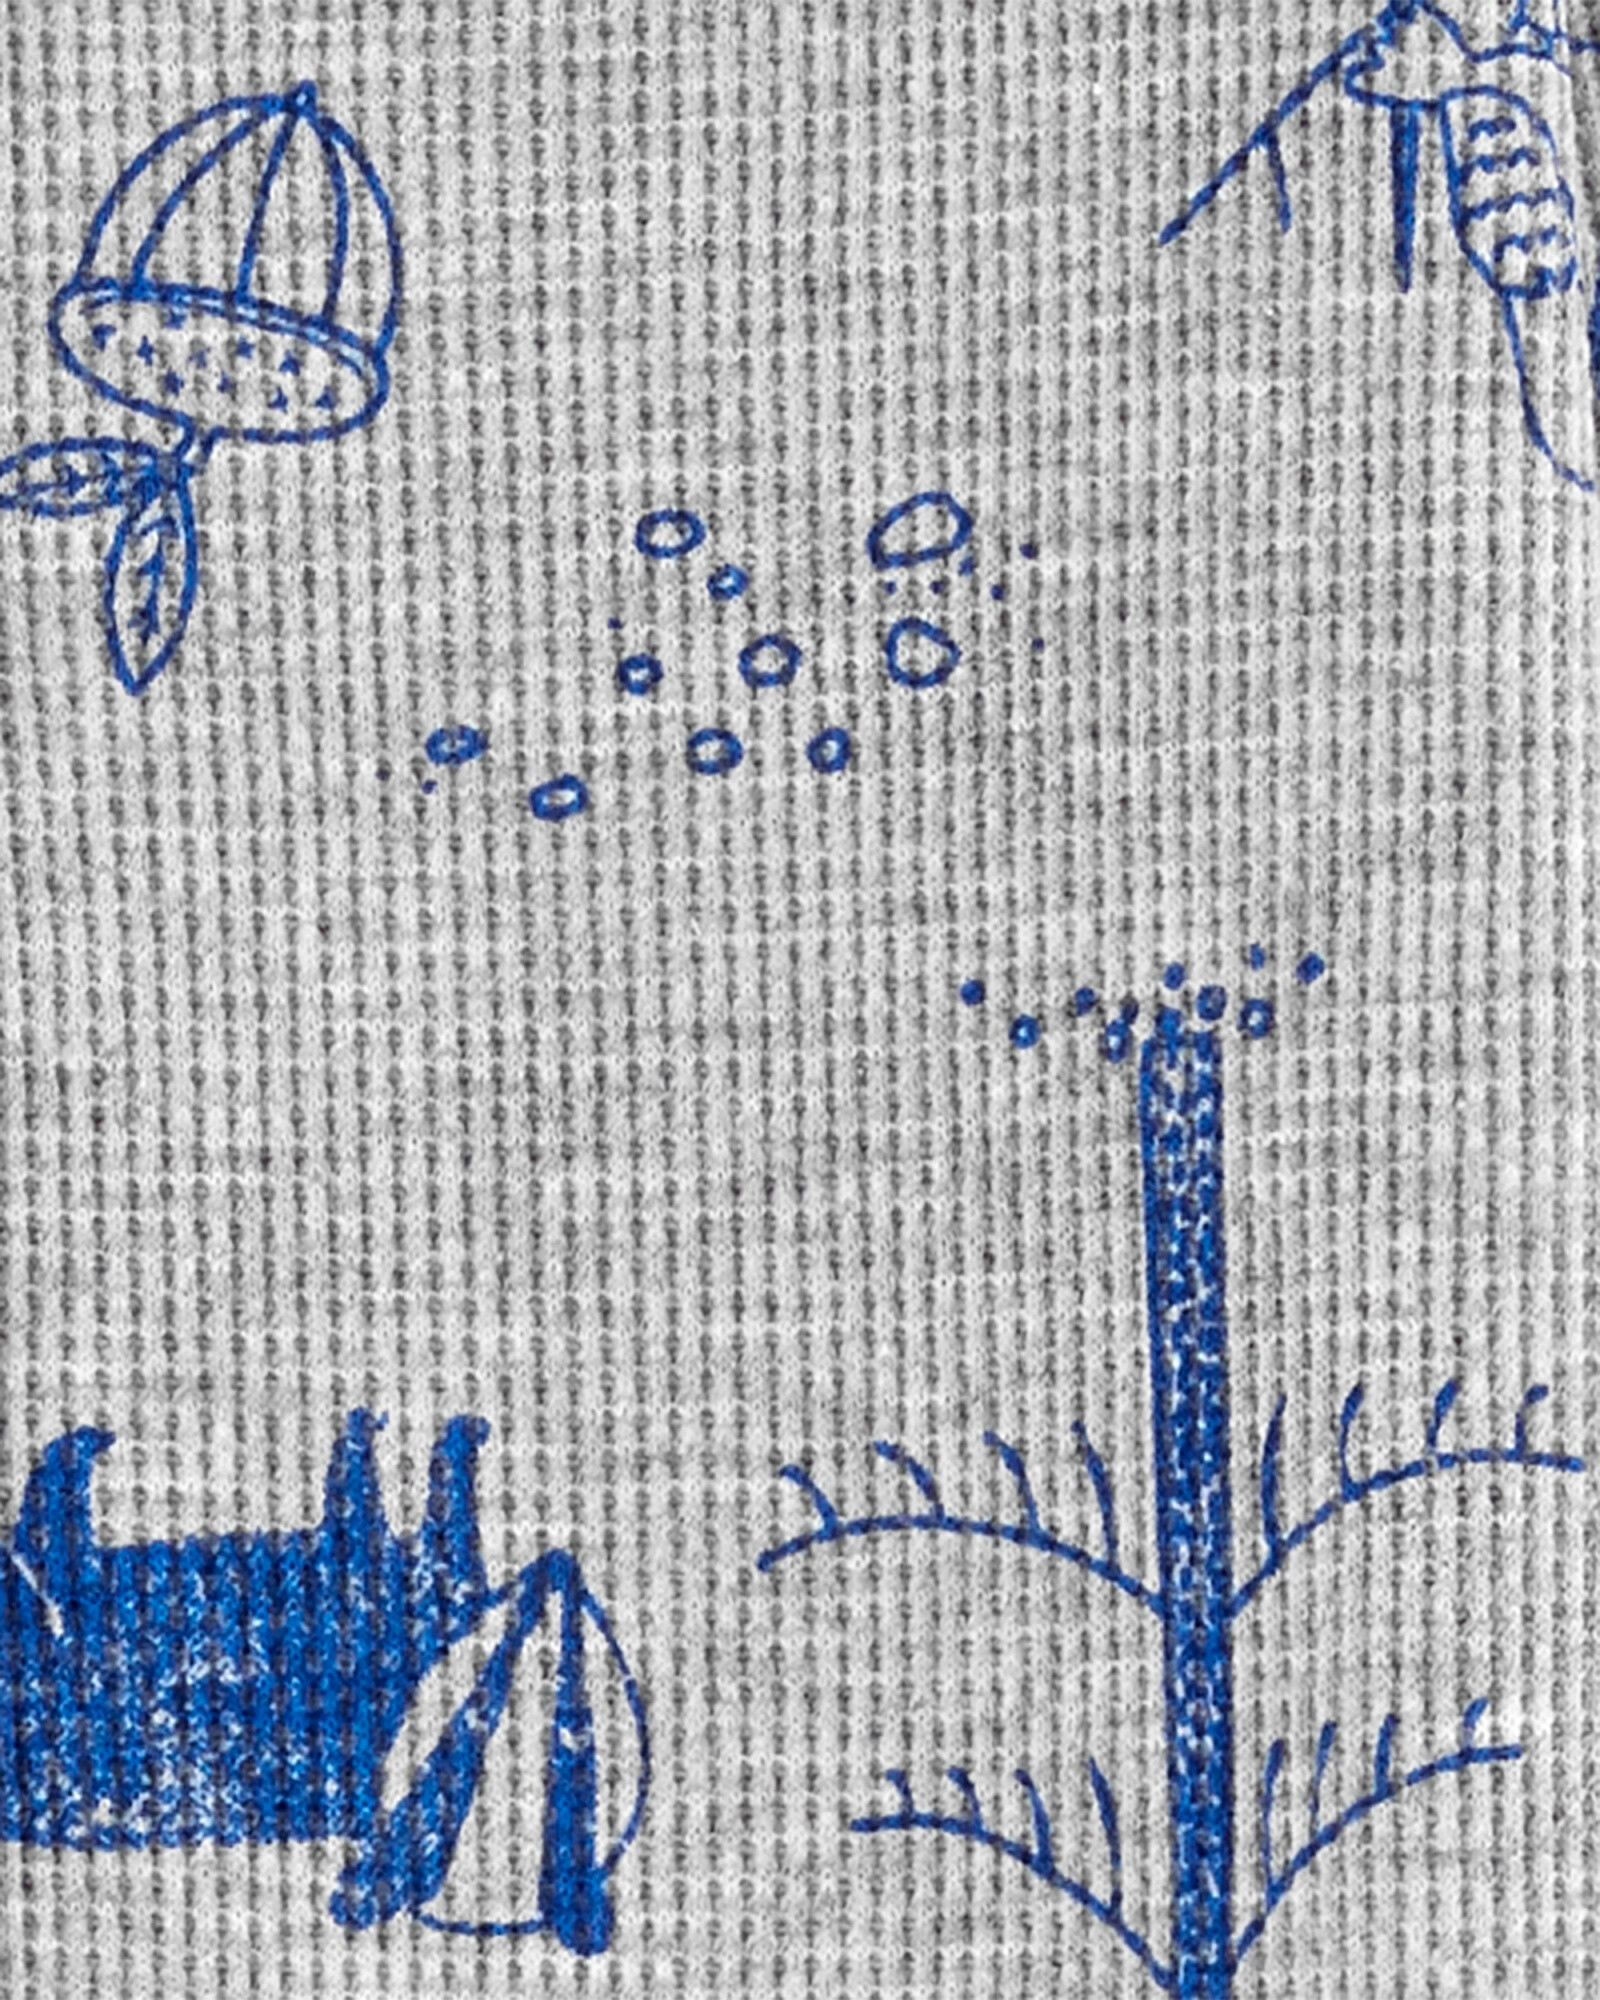 Pijama una pieza de algodón térmico con pie diseño bosque Sin color